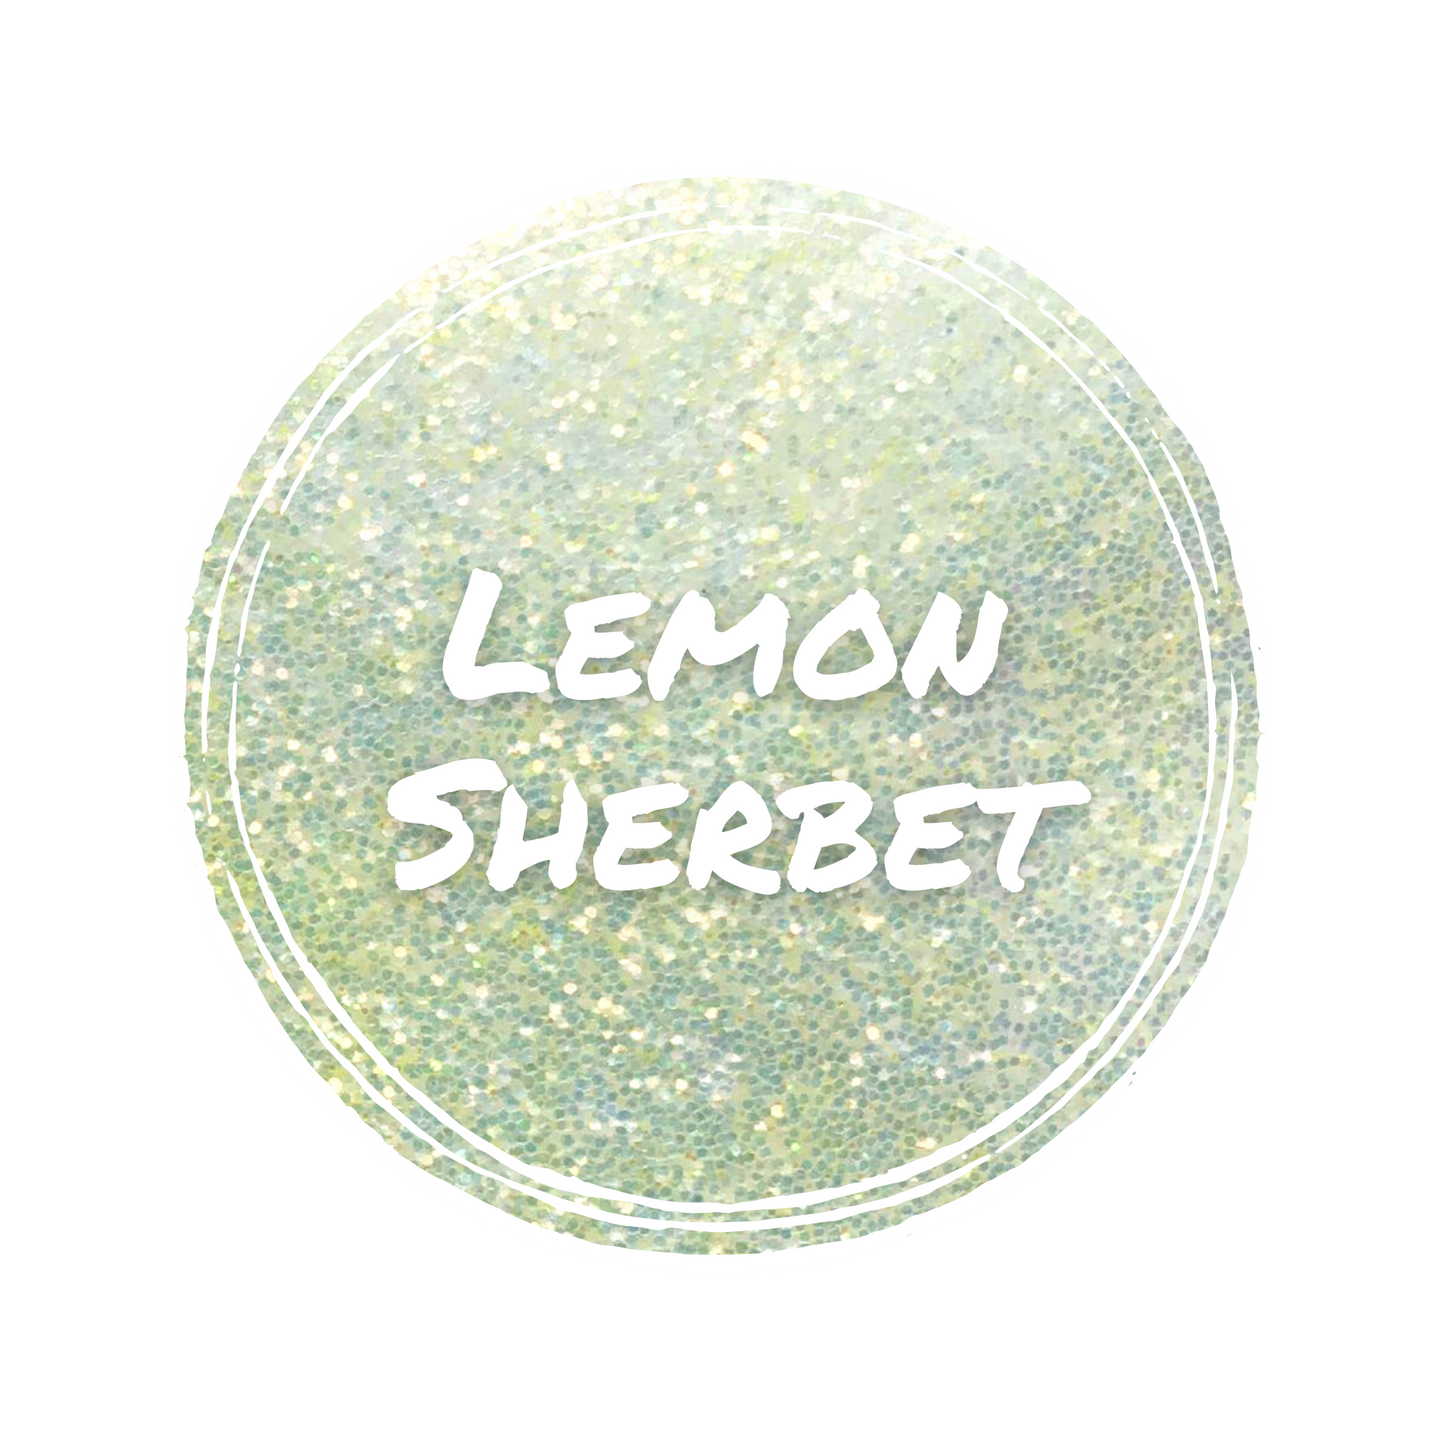 Lemon Sherbet